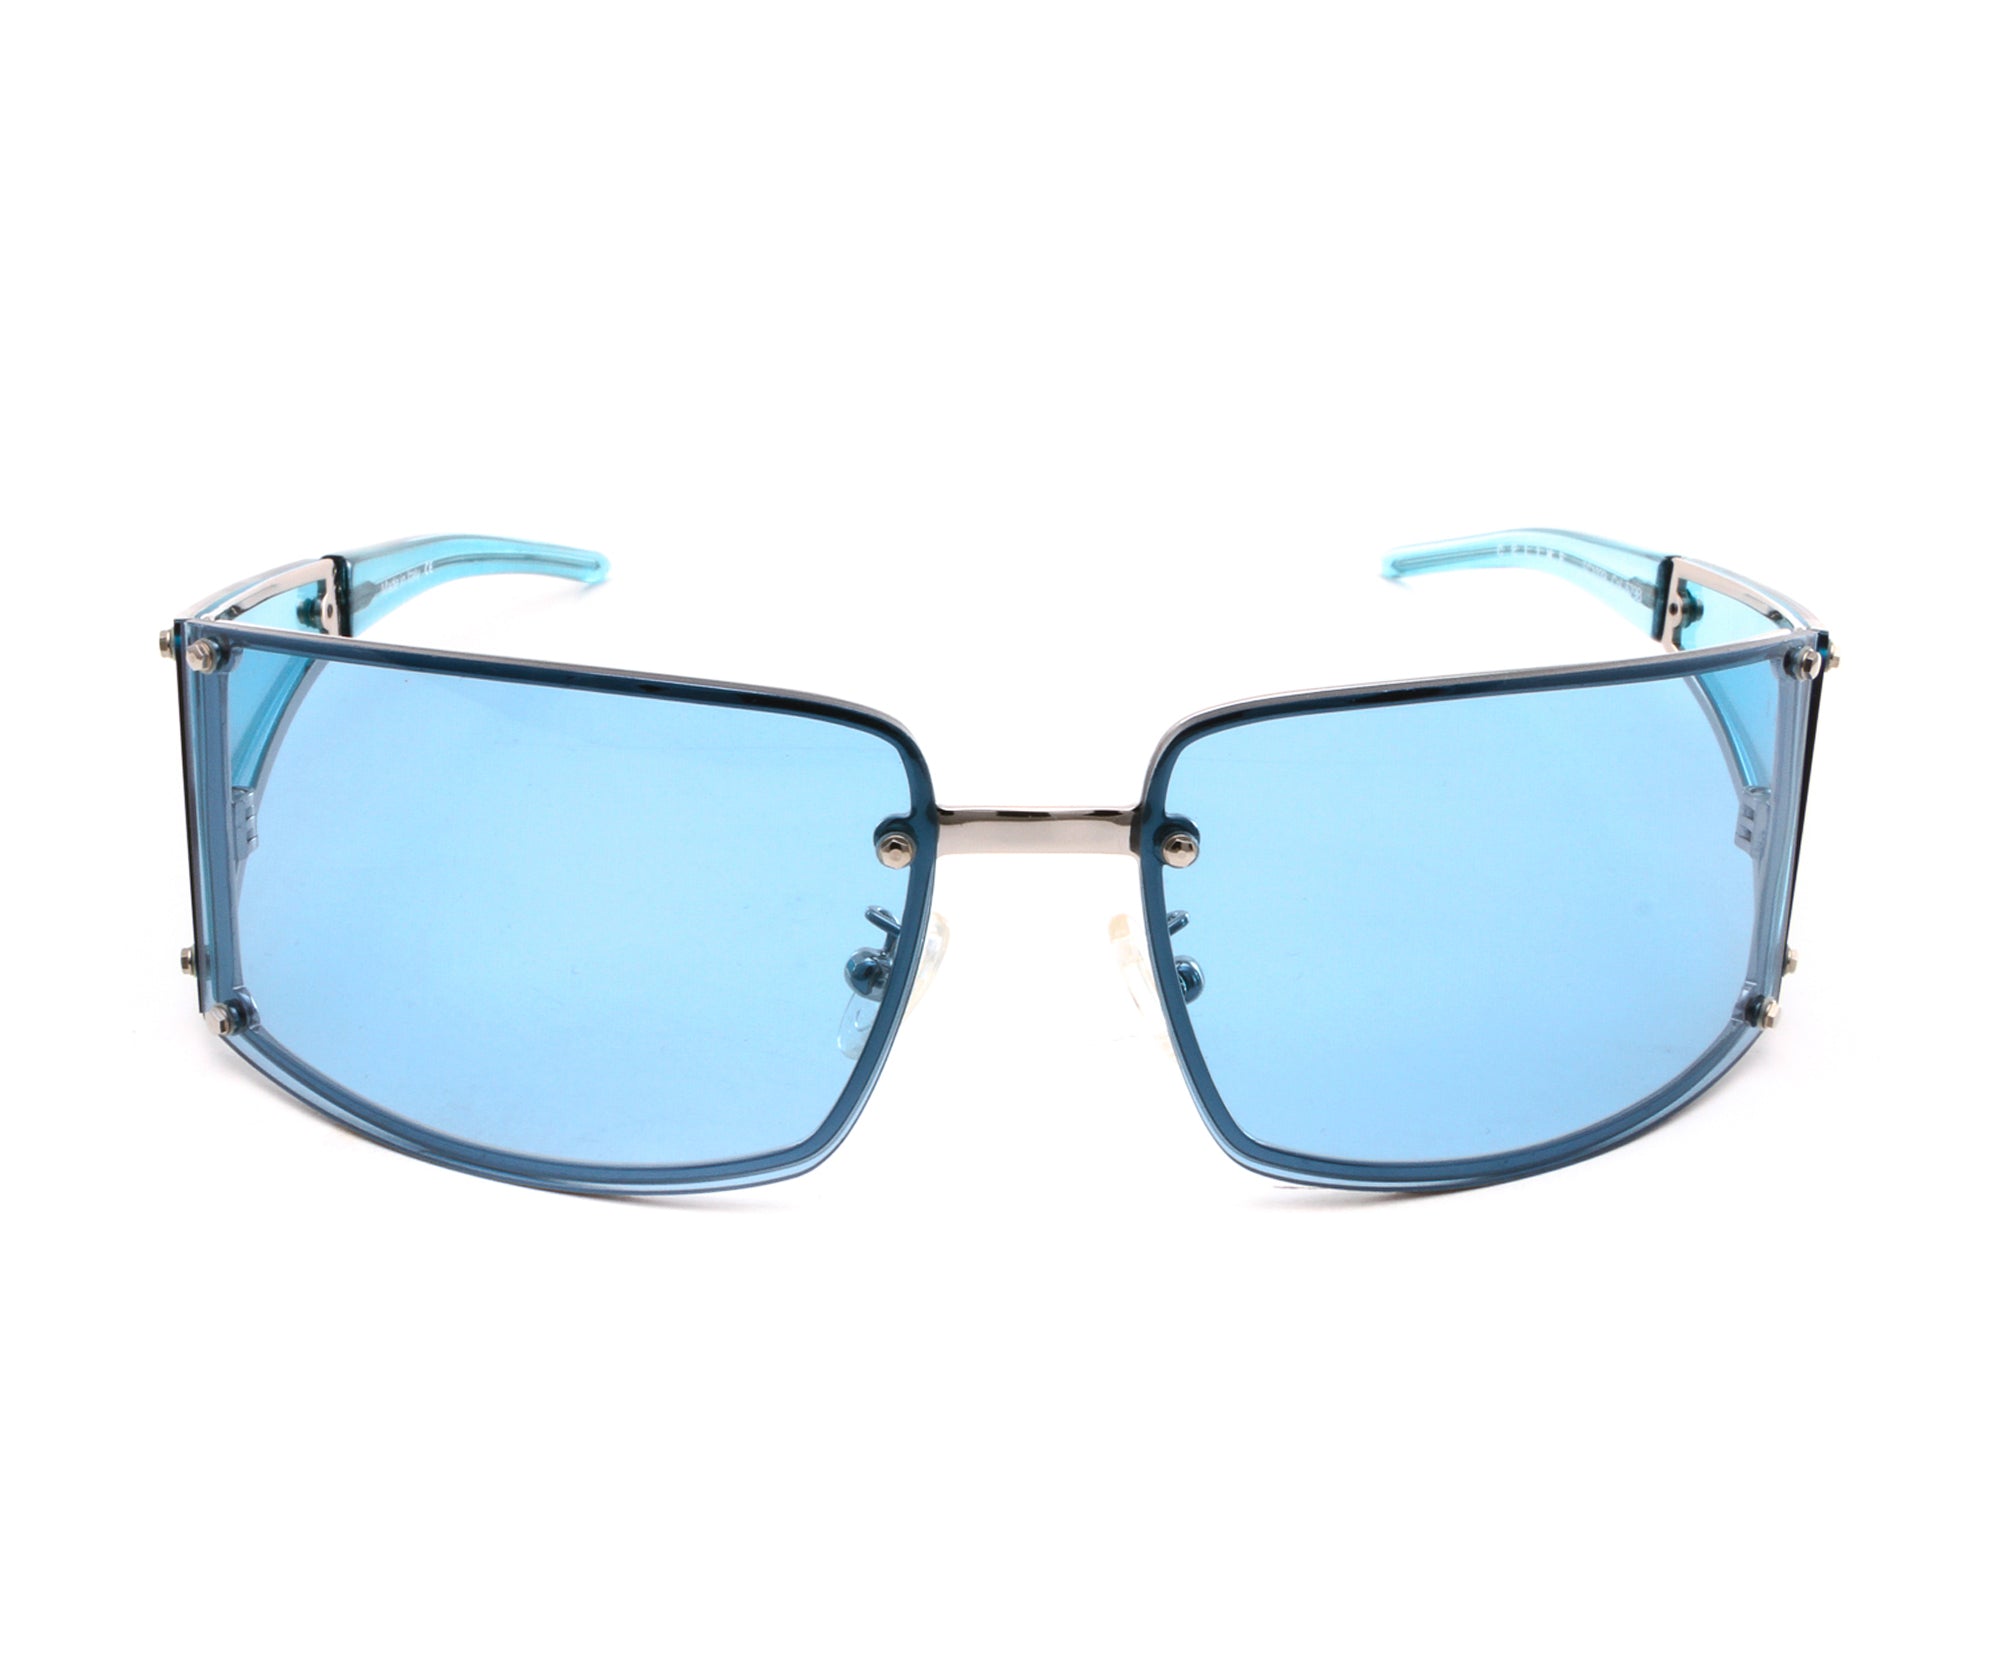 celine turquoise sunglasses